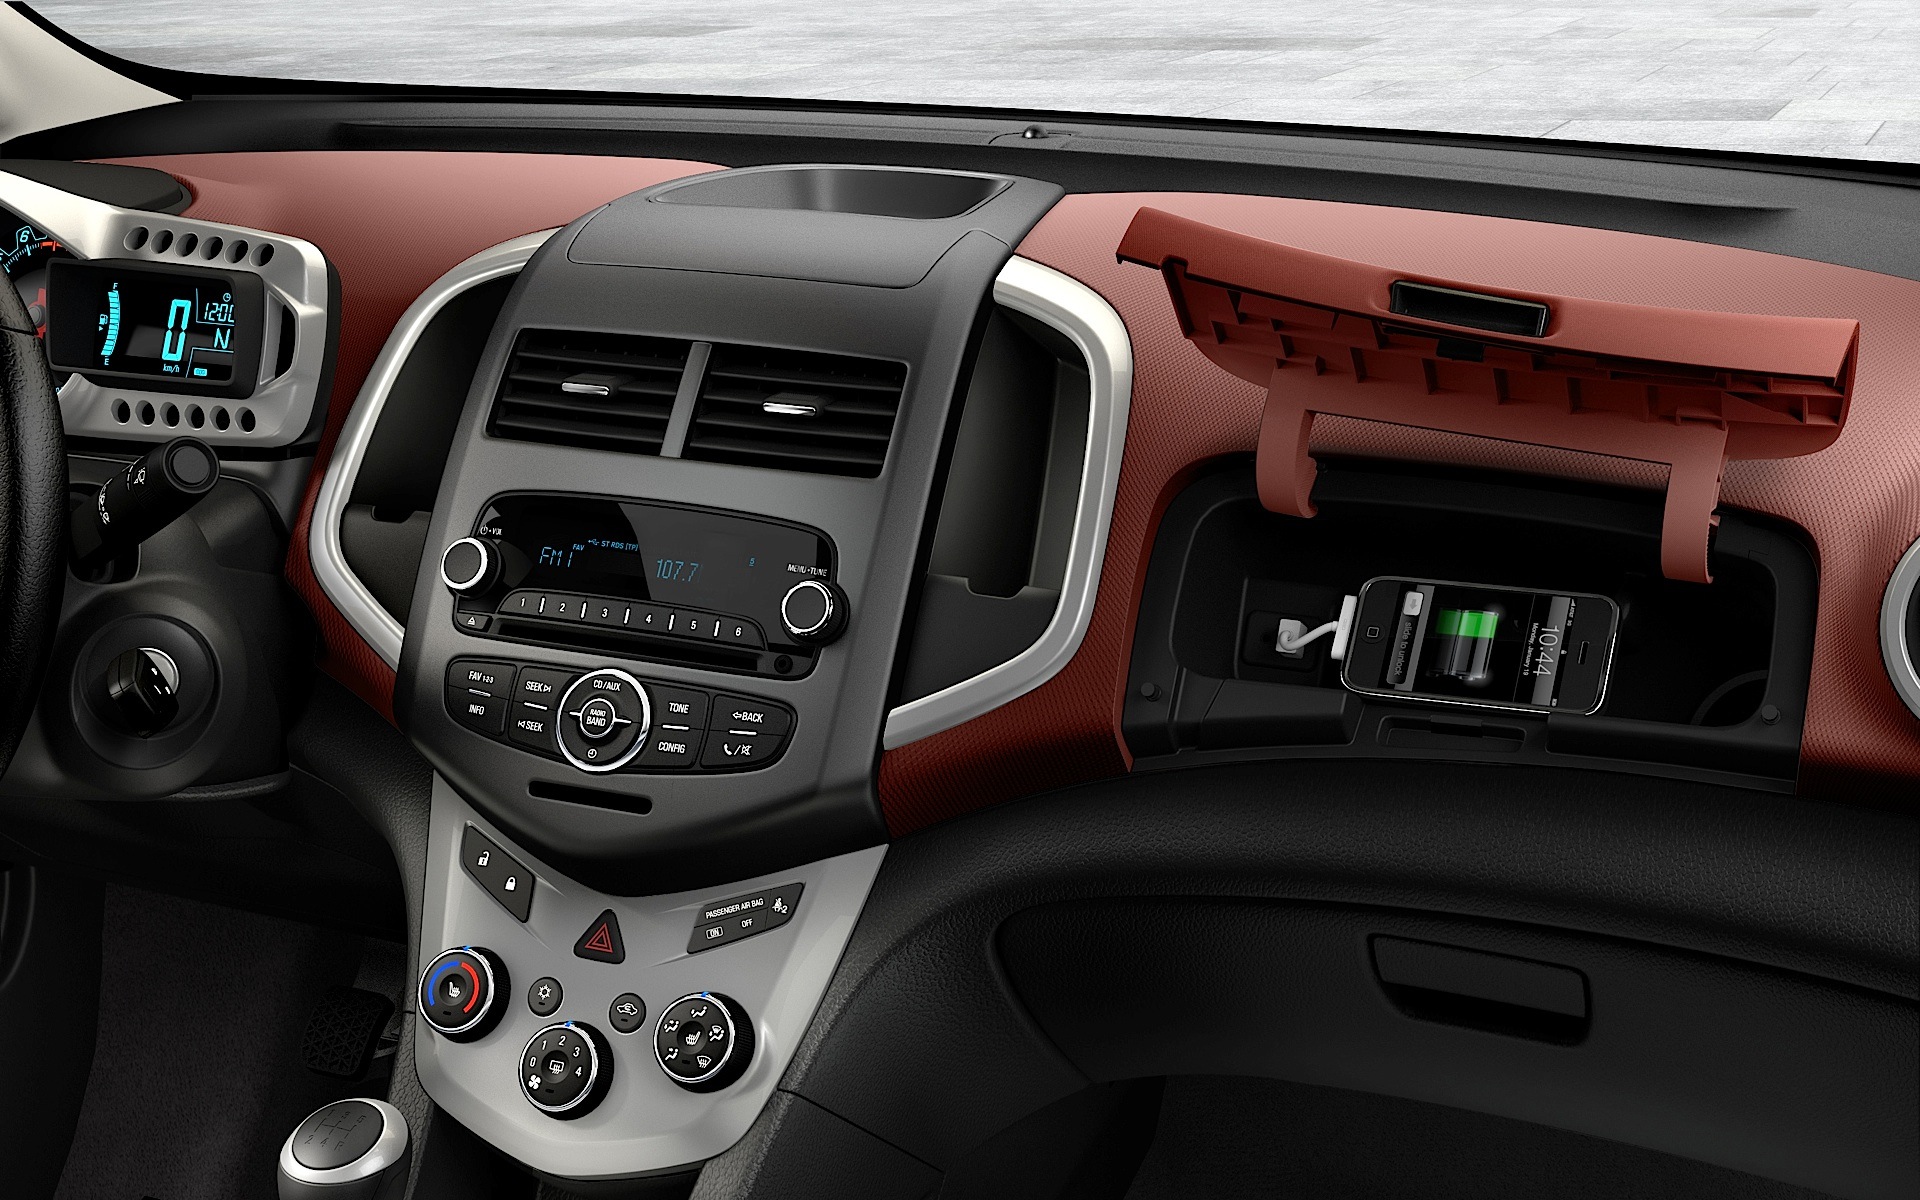 chevy sonic hatchback interior